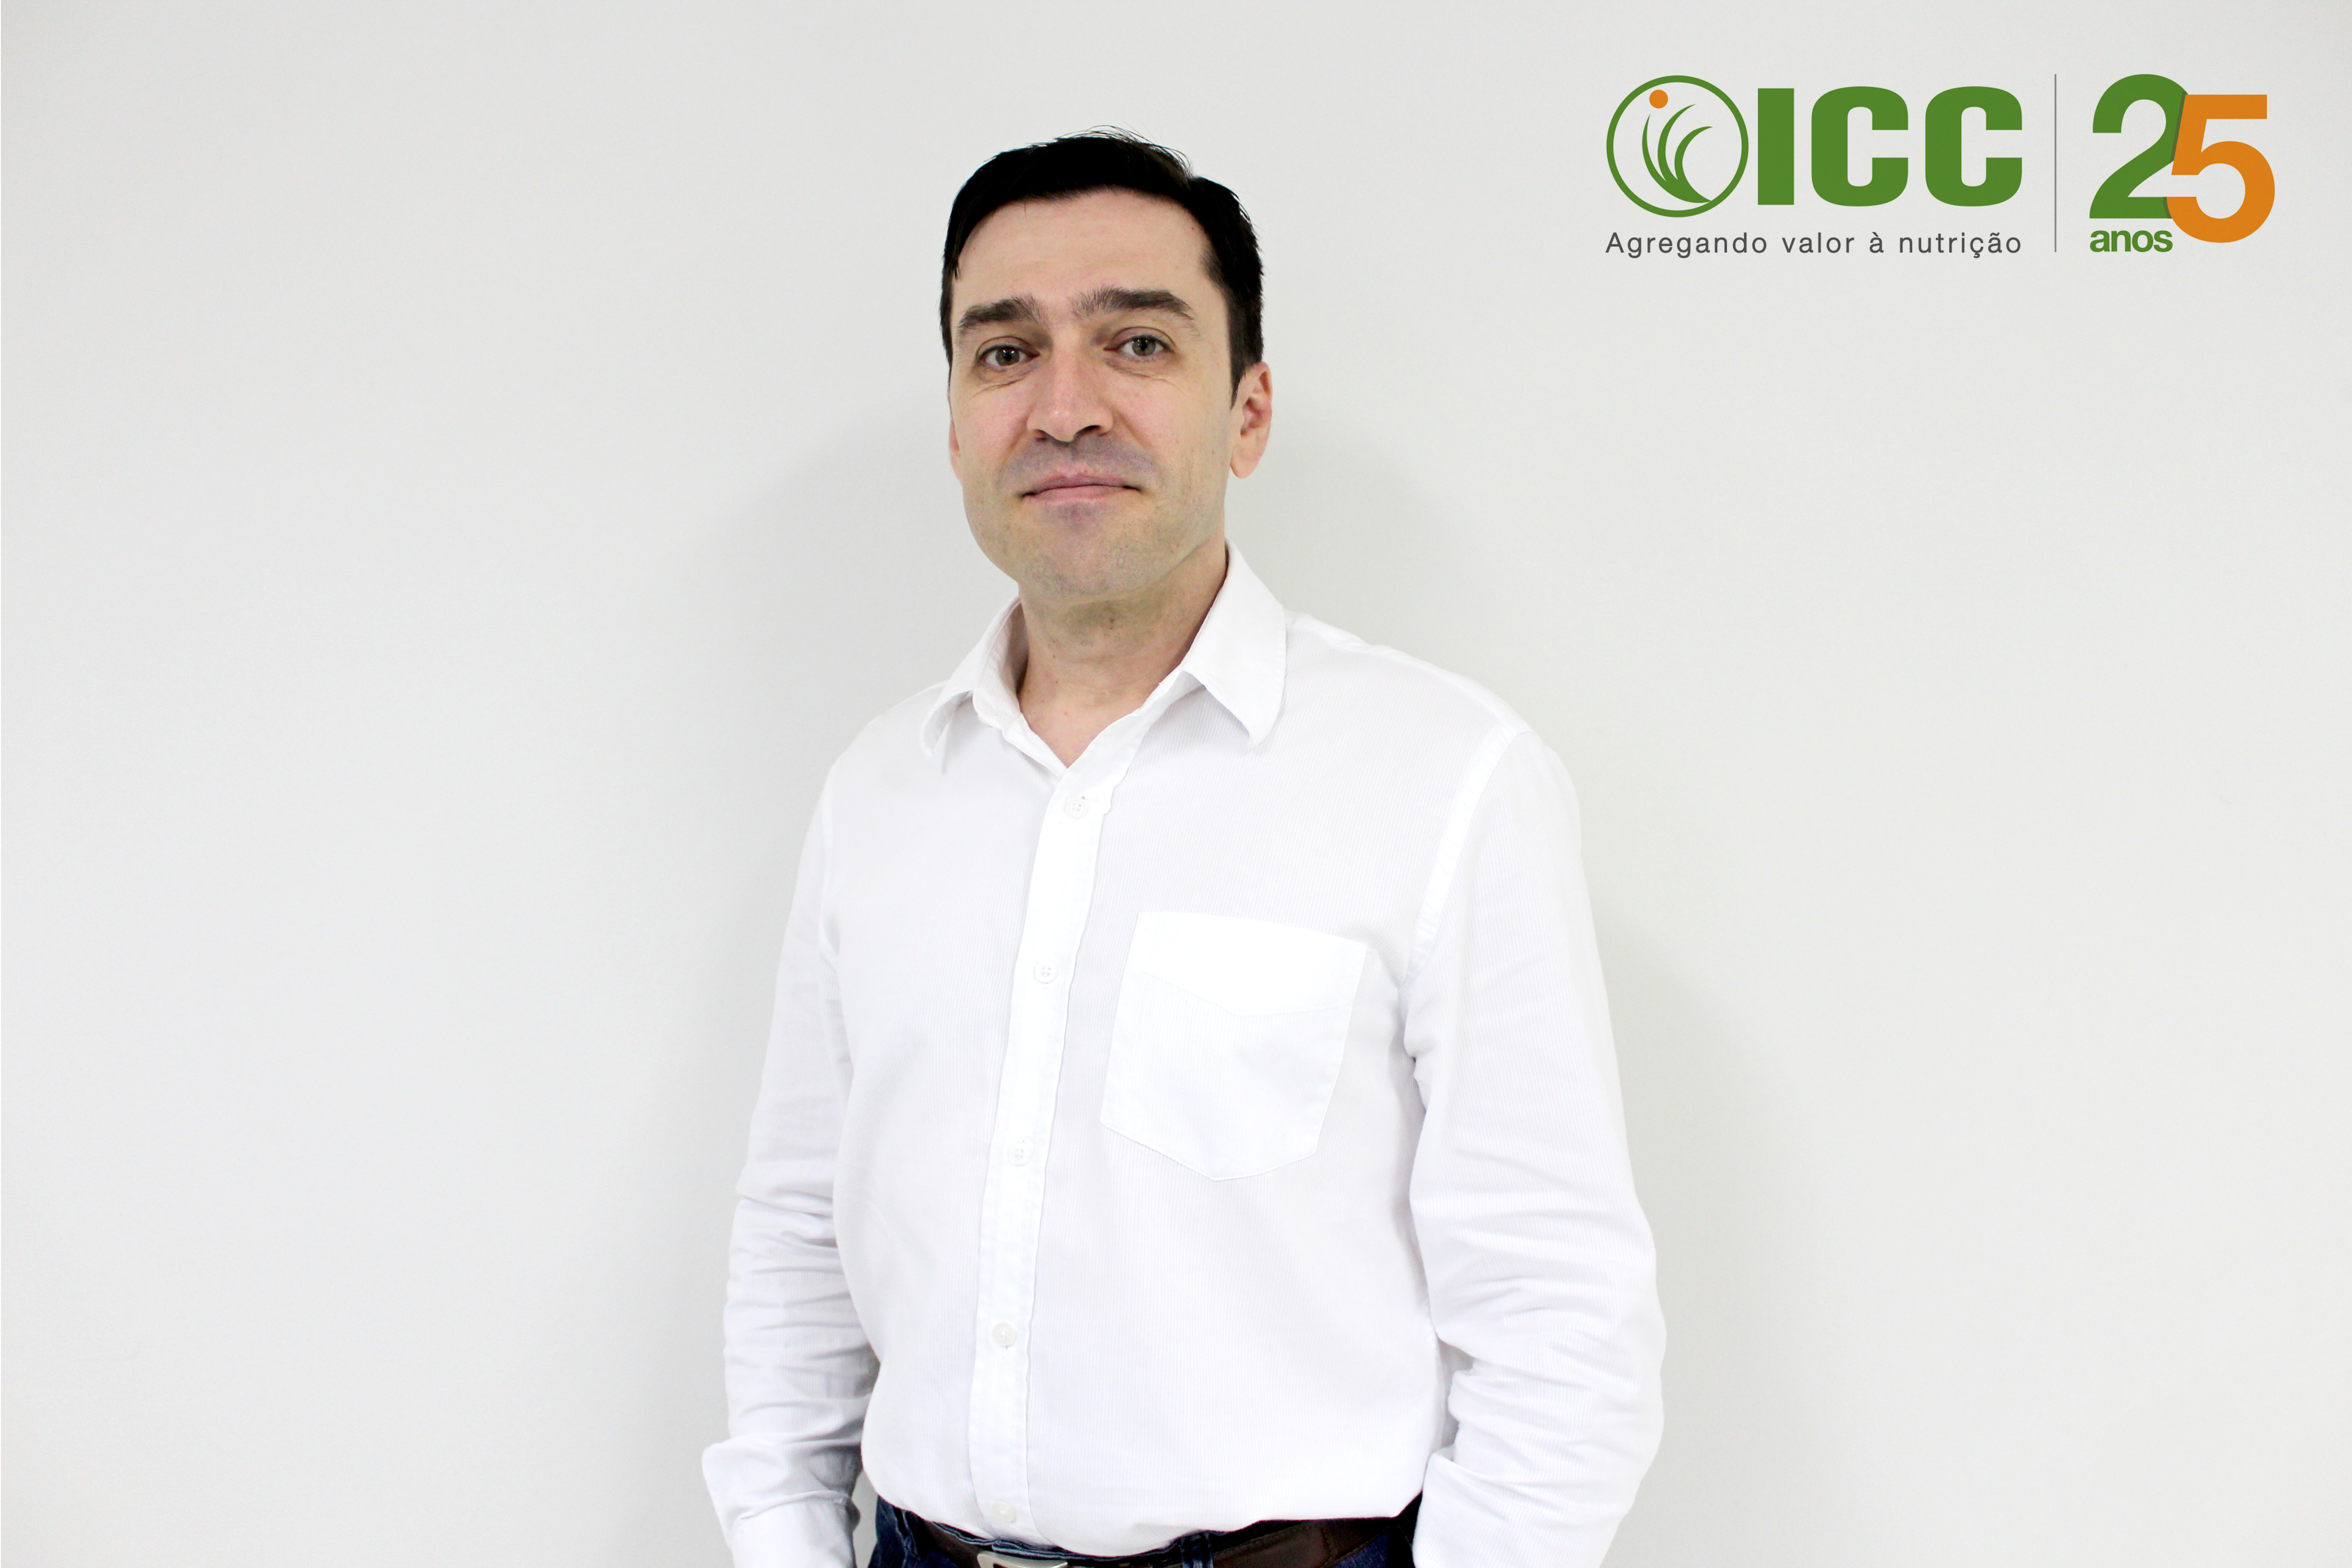 Alexandre Filipe da Silva, ICC's Commercial Supervisor for the Southern Region